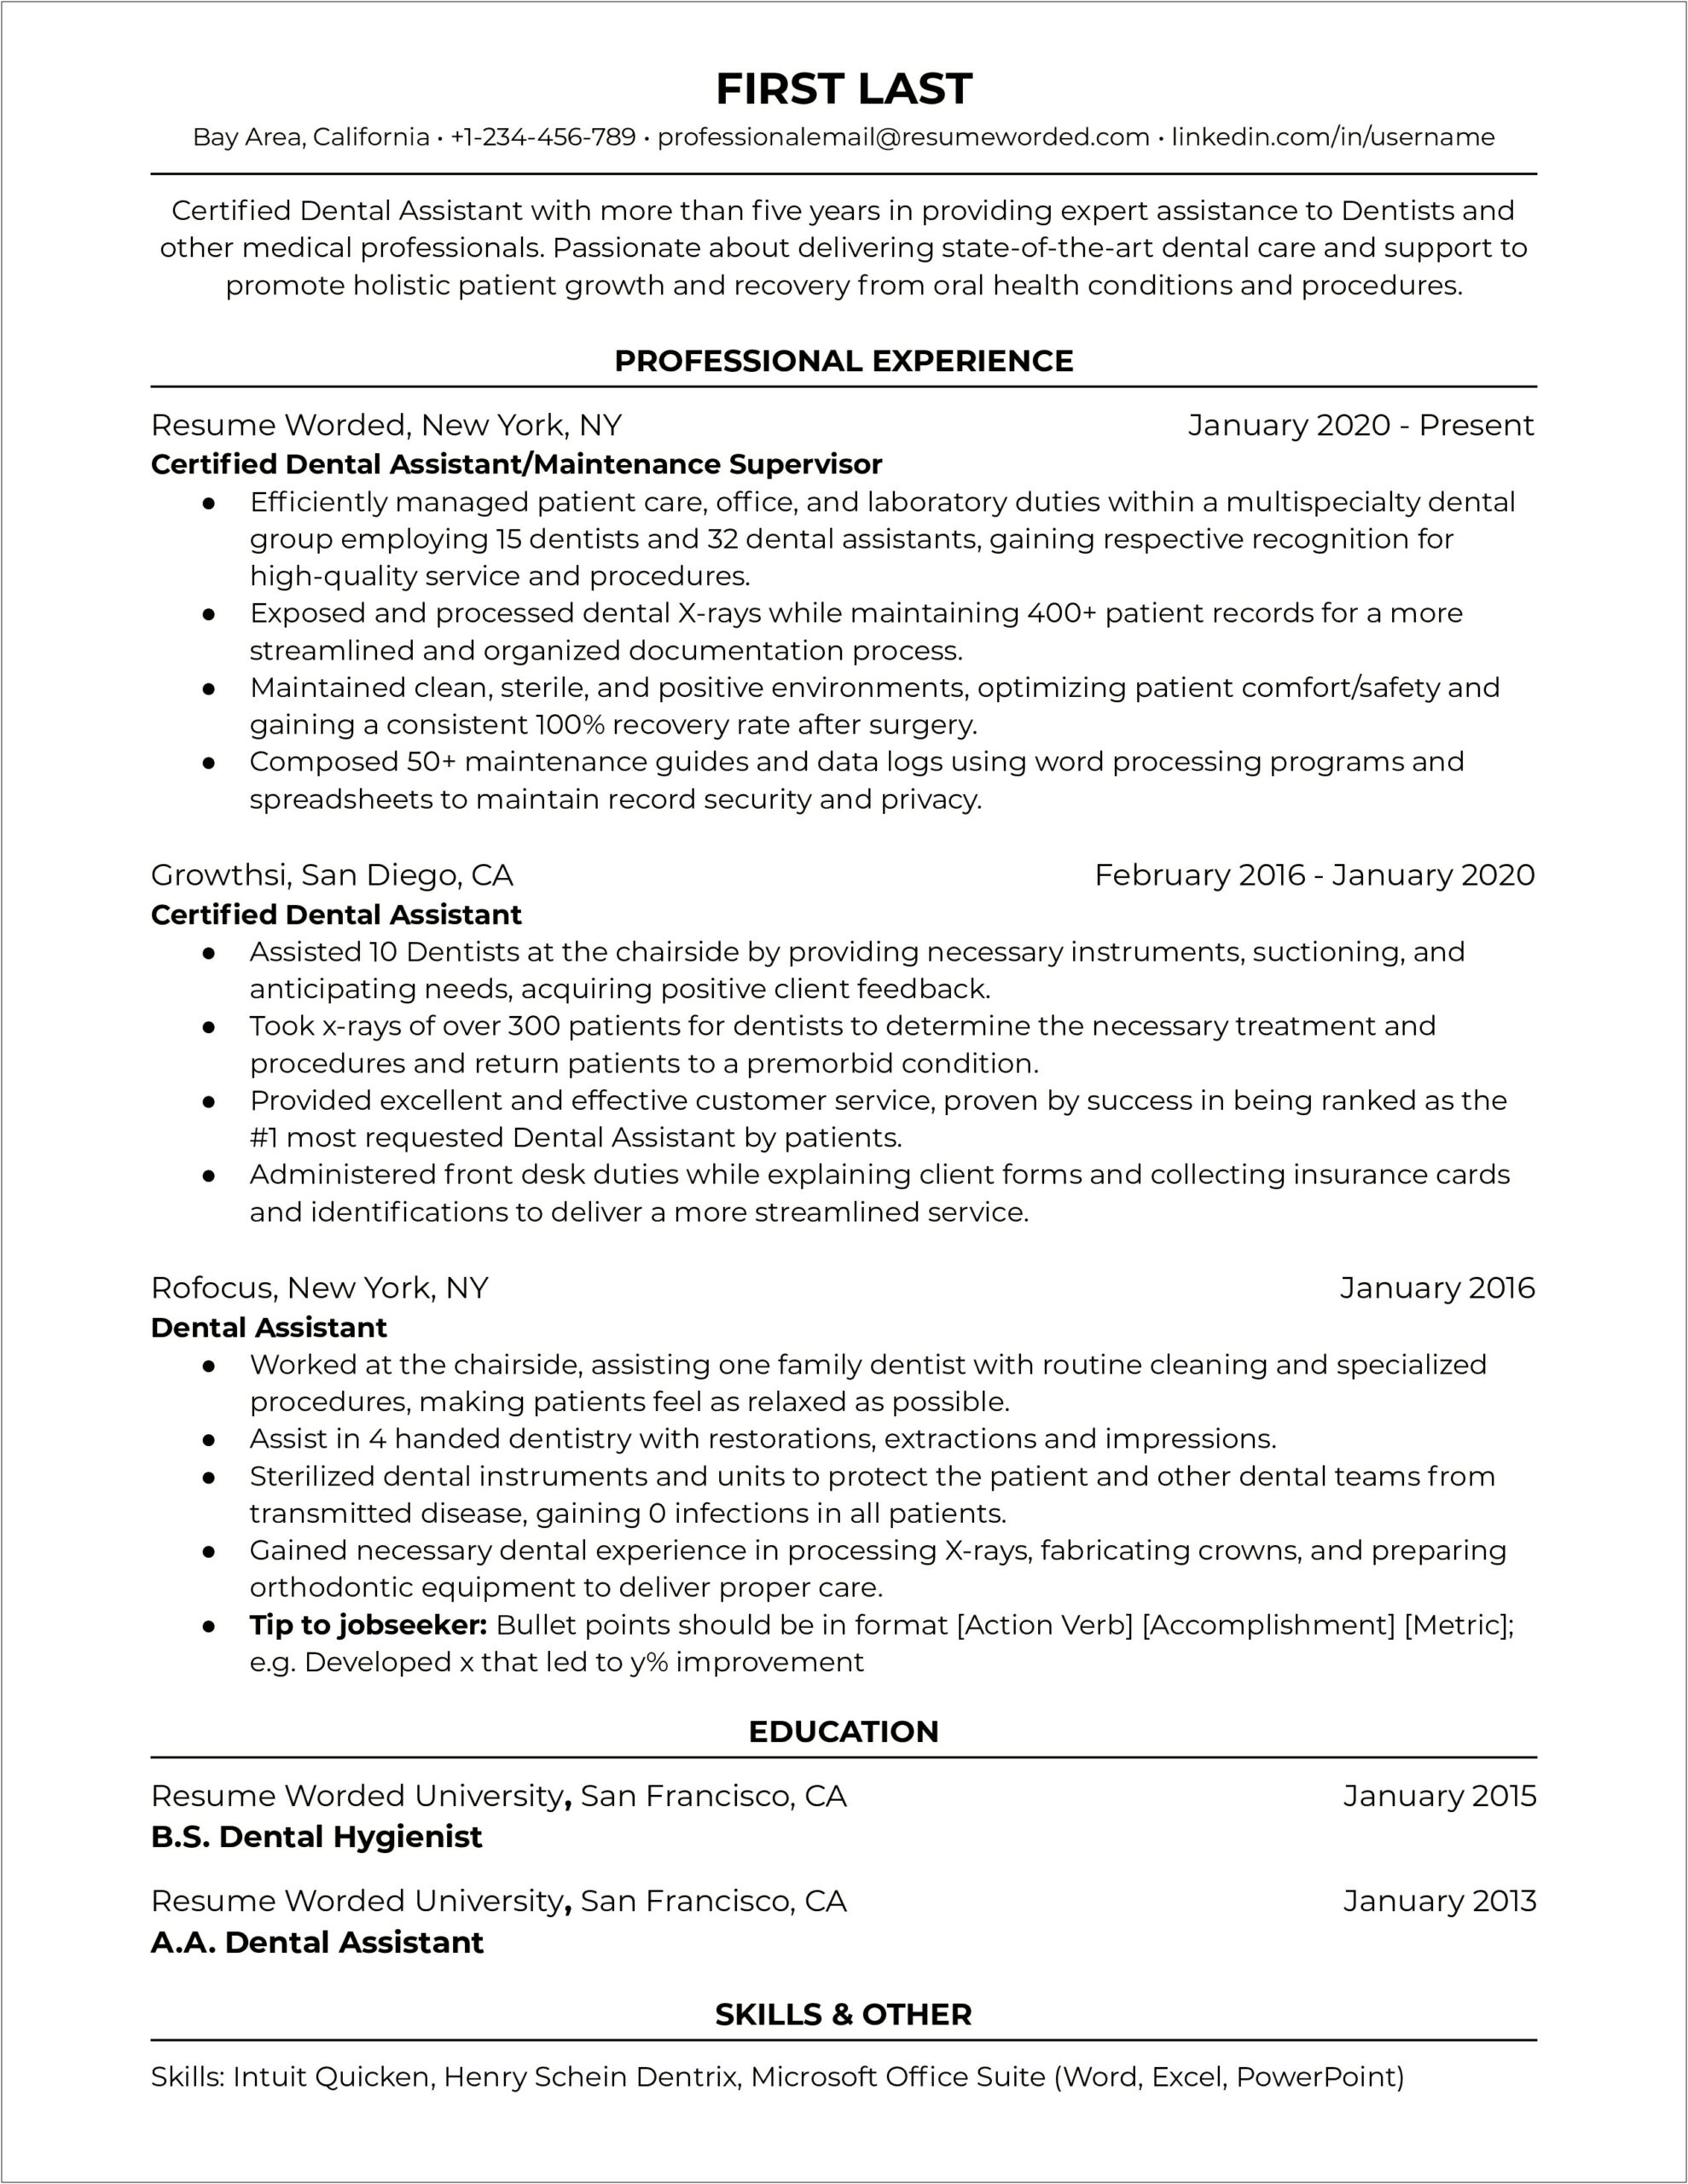 Sample Resume For Certified Dental Assistant